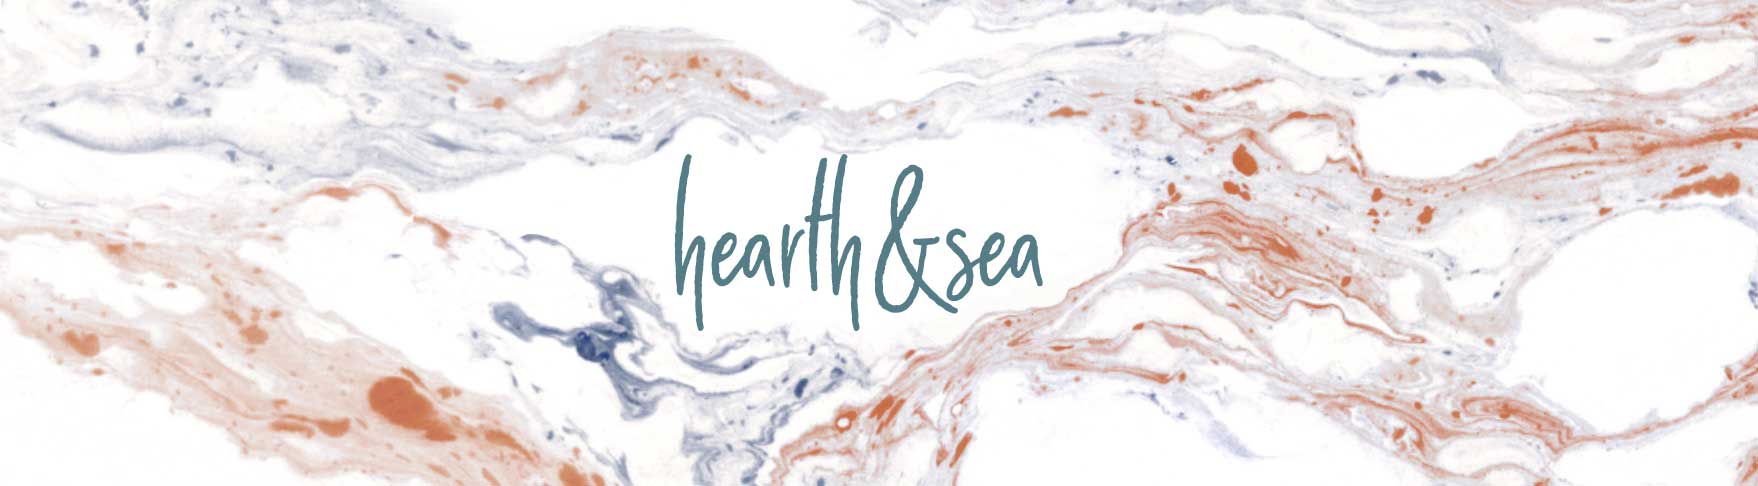 Hearth&Sea